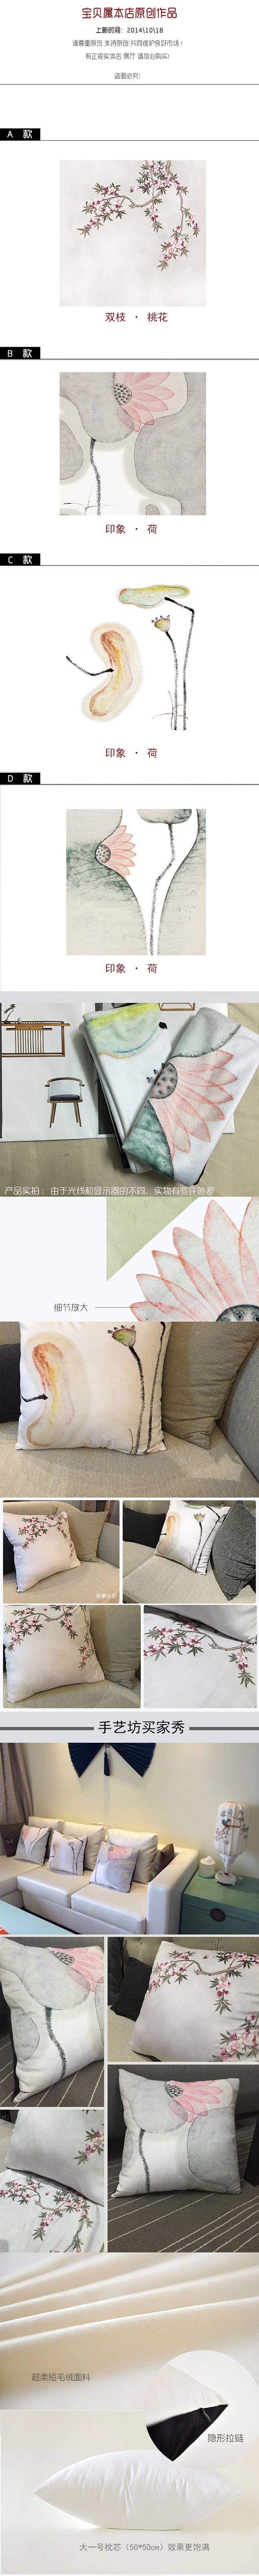 新中式艺术水墨抱枕沙发靠枕新现代水墨风格...